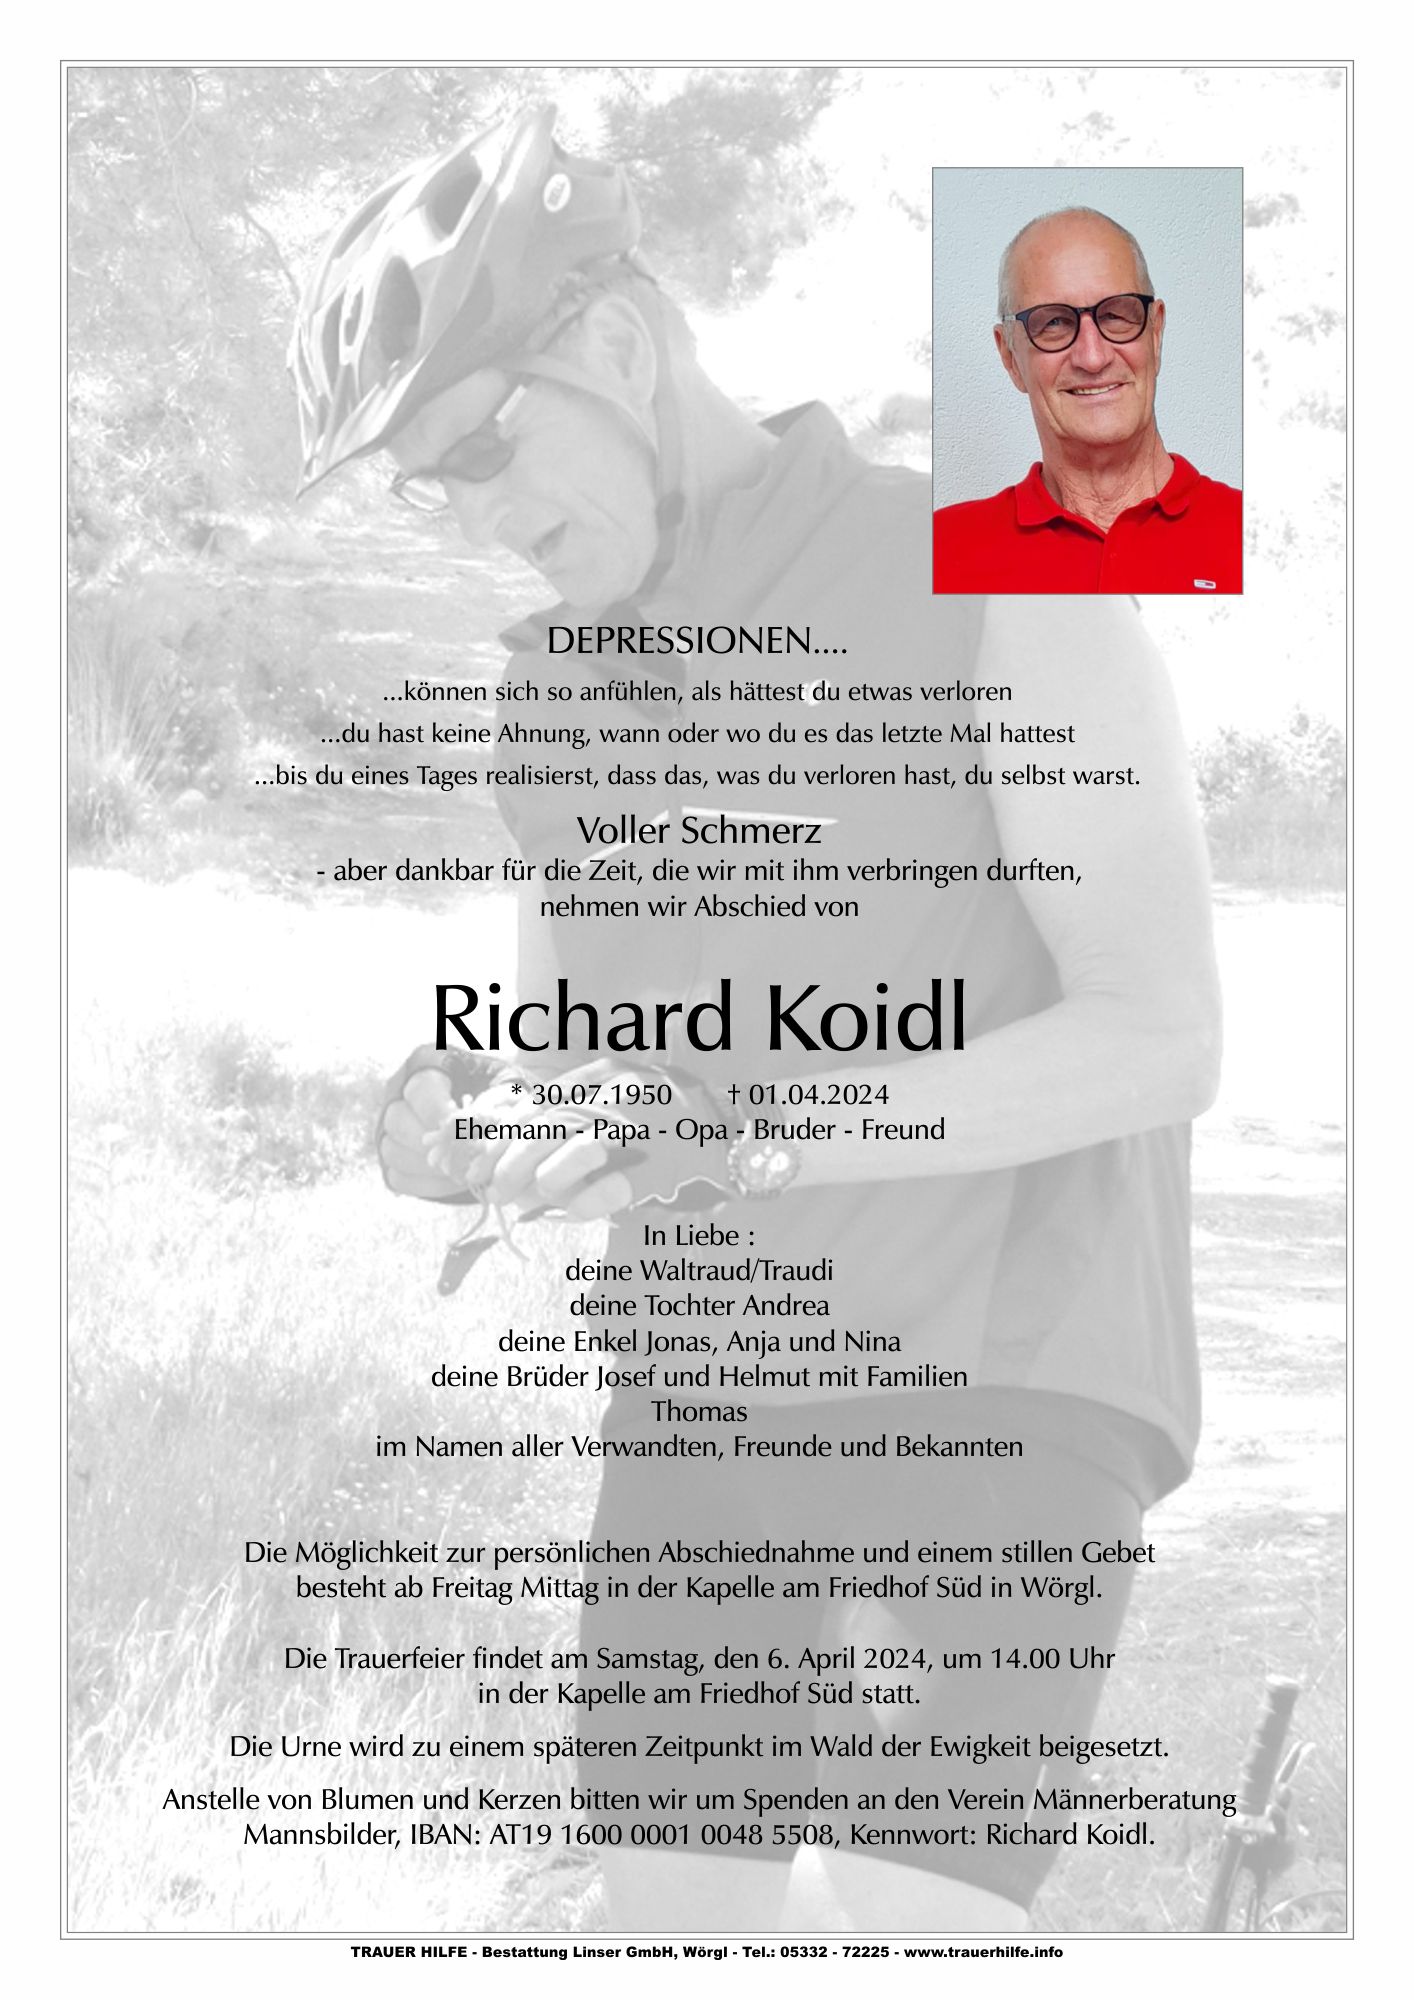 Richard Koidl